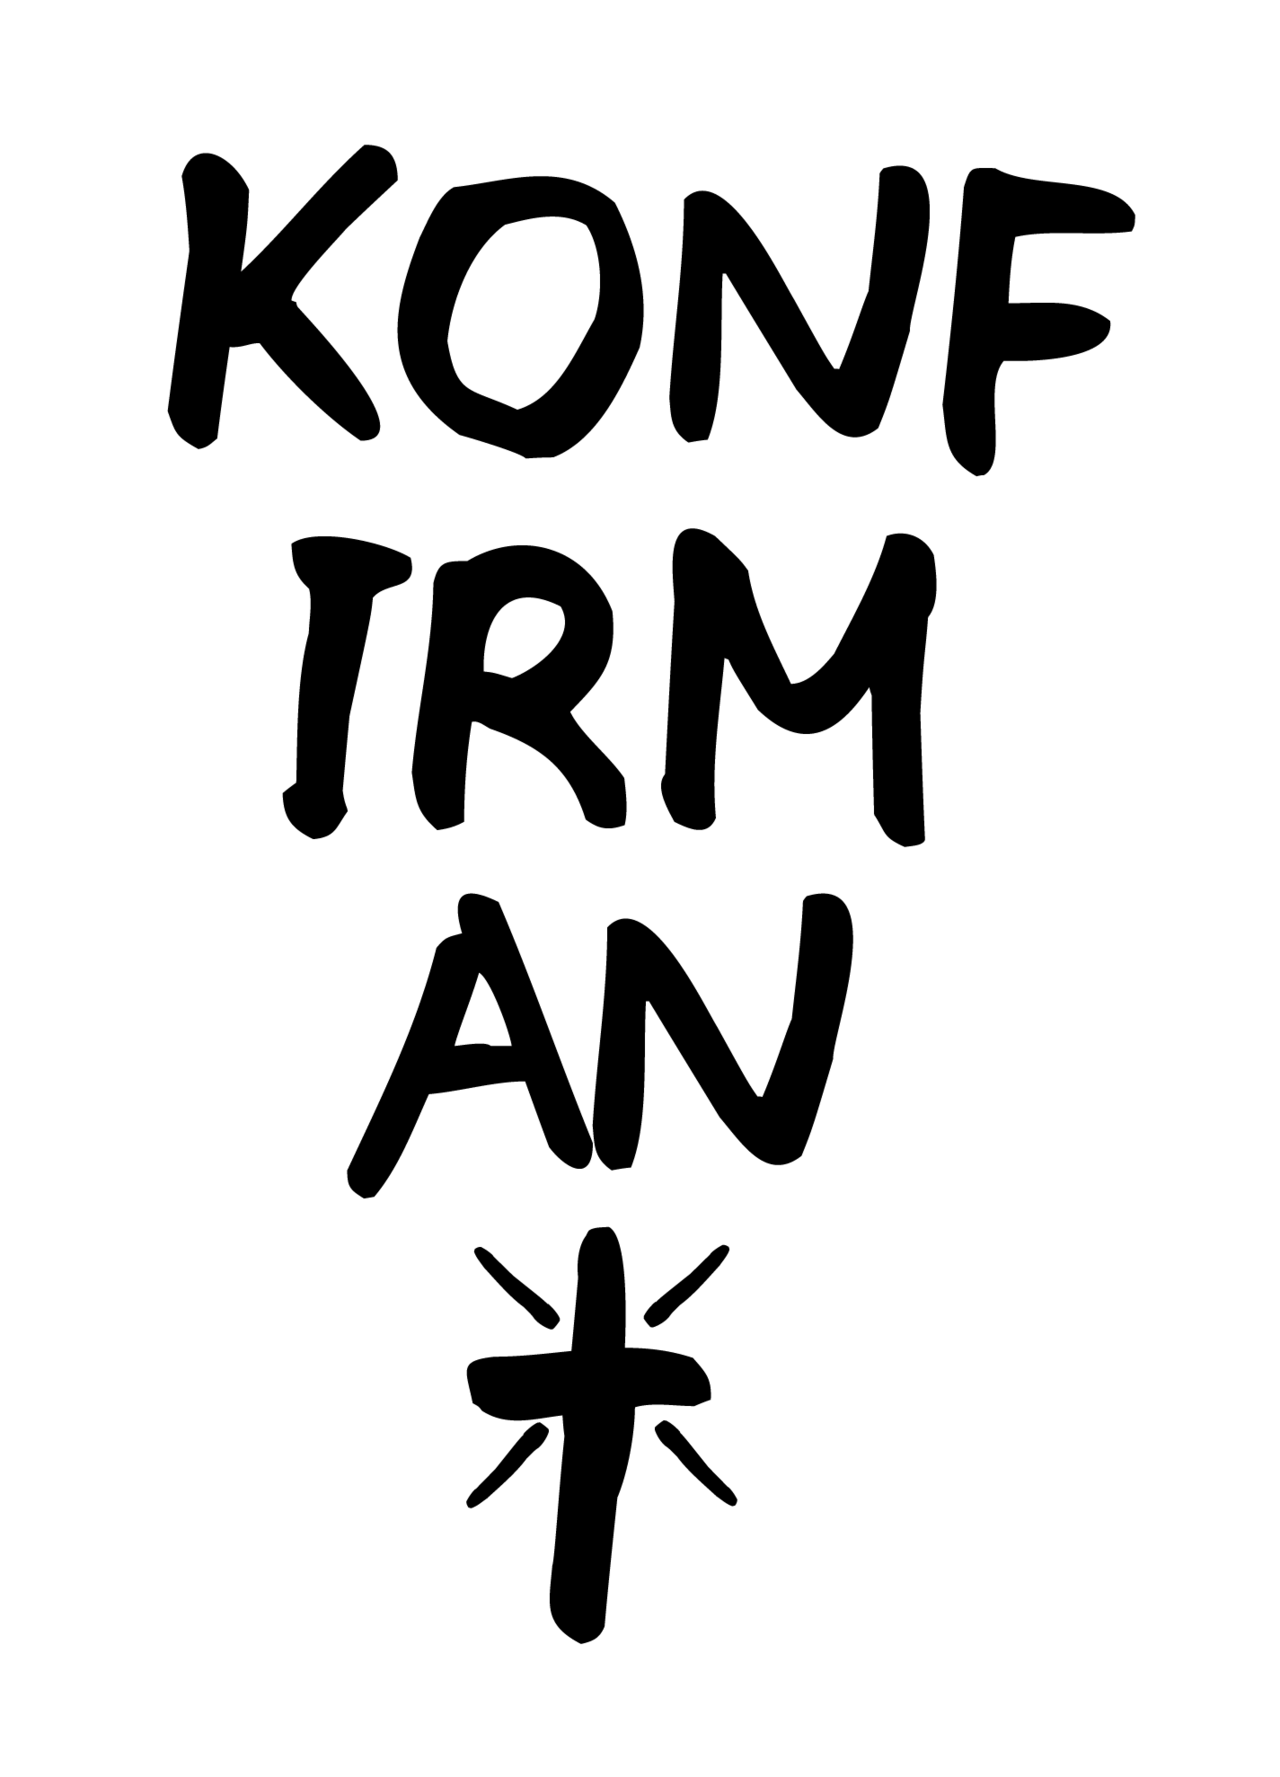 Den norske kirke logo vertikaL KONFIRMANT.png